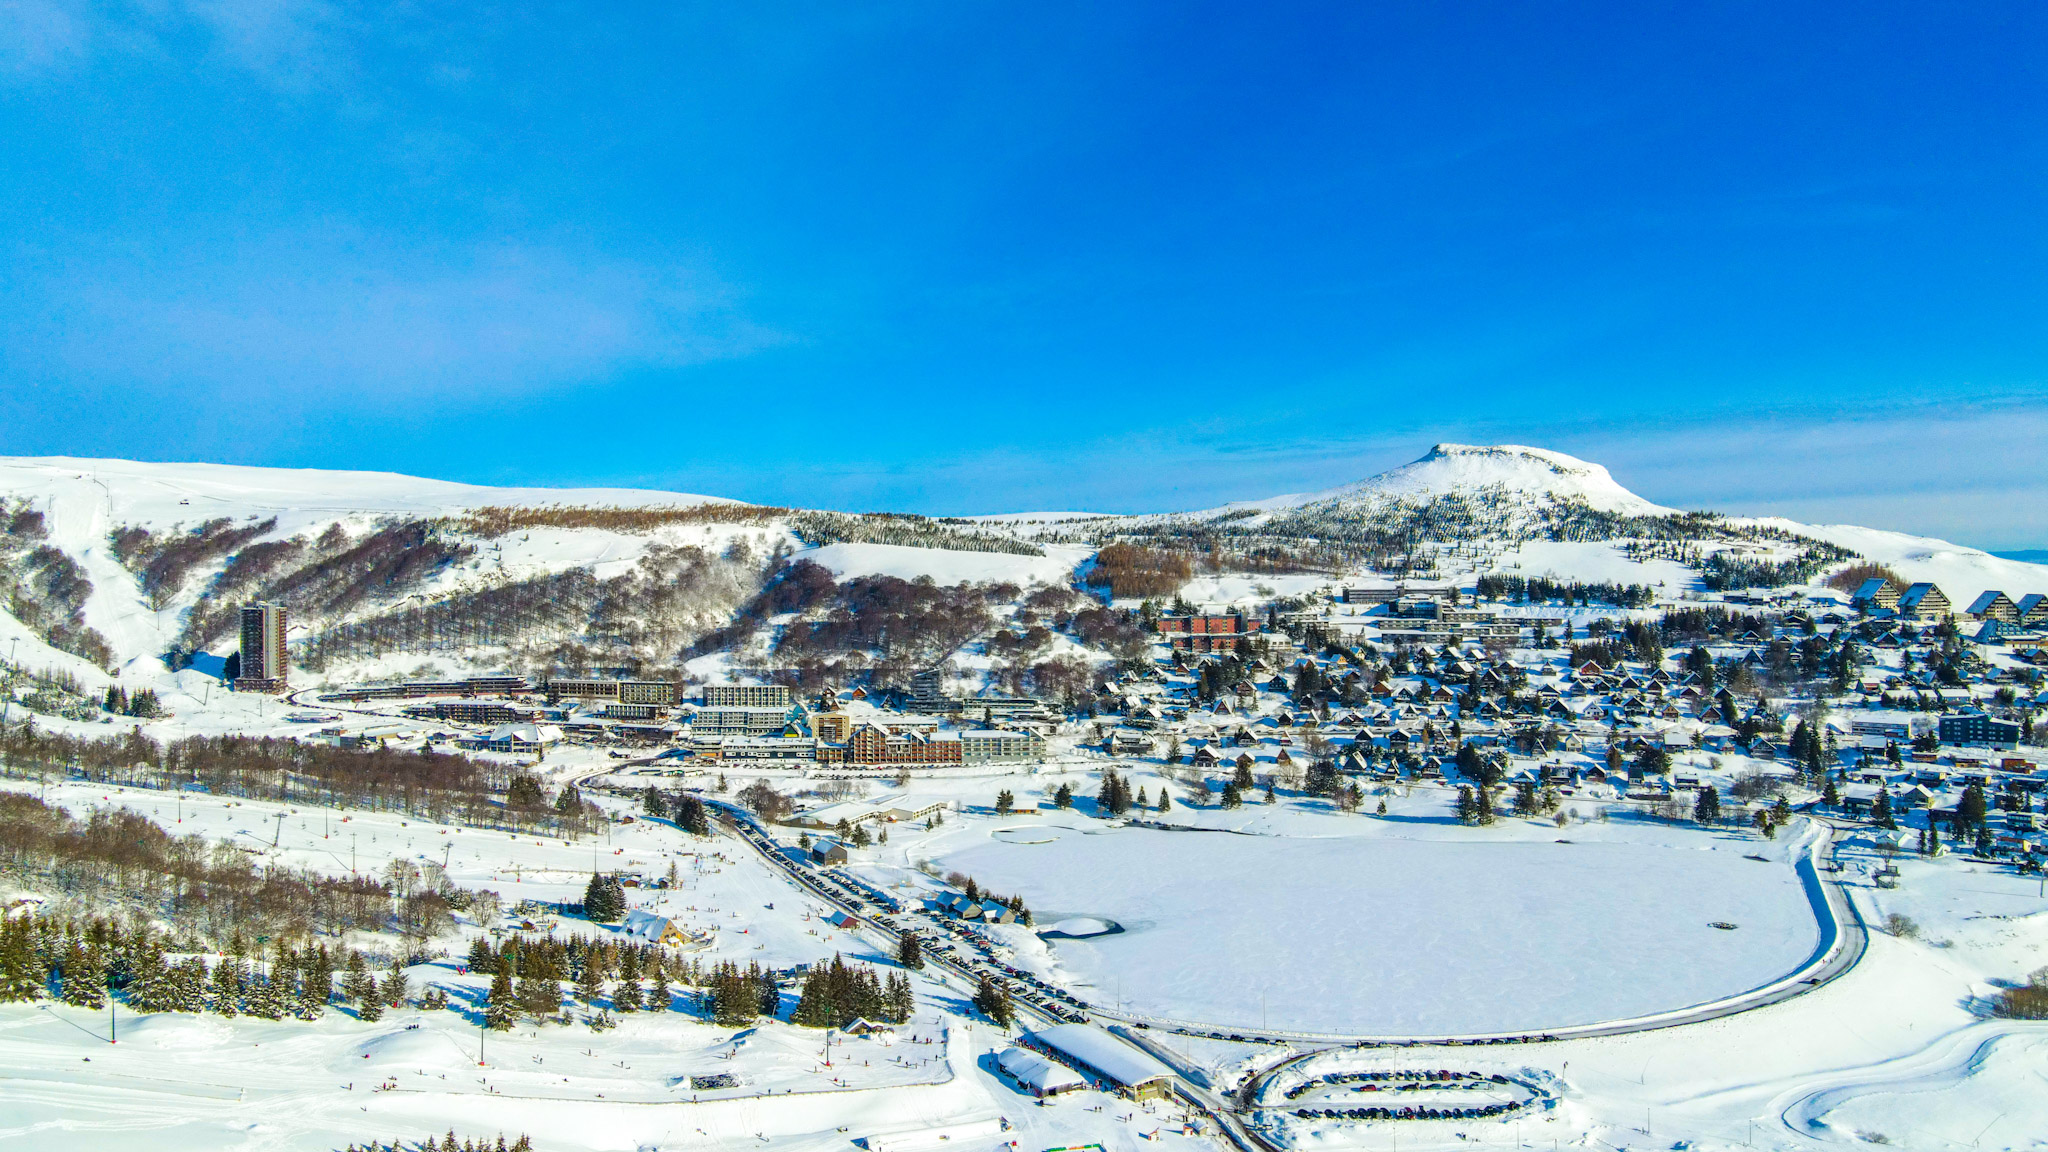 the Super Besse ski resort under the snow